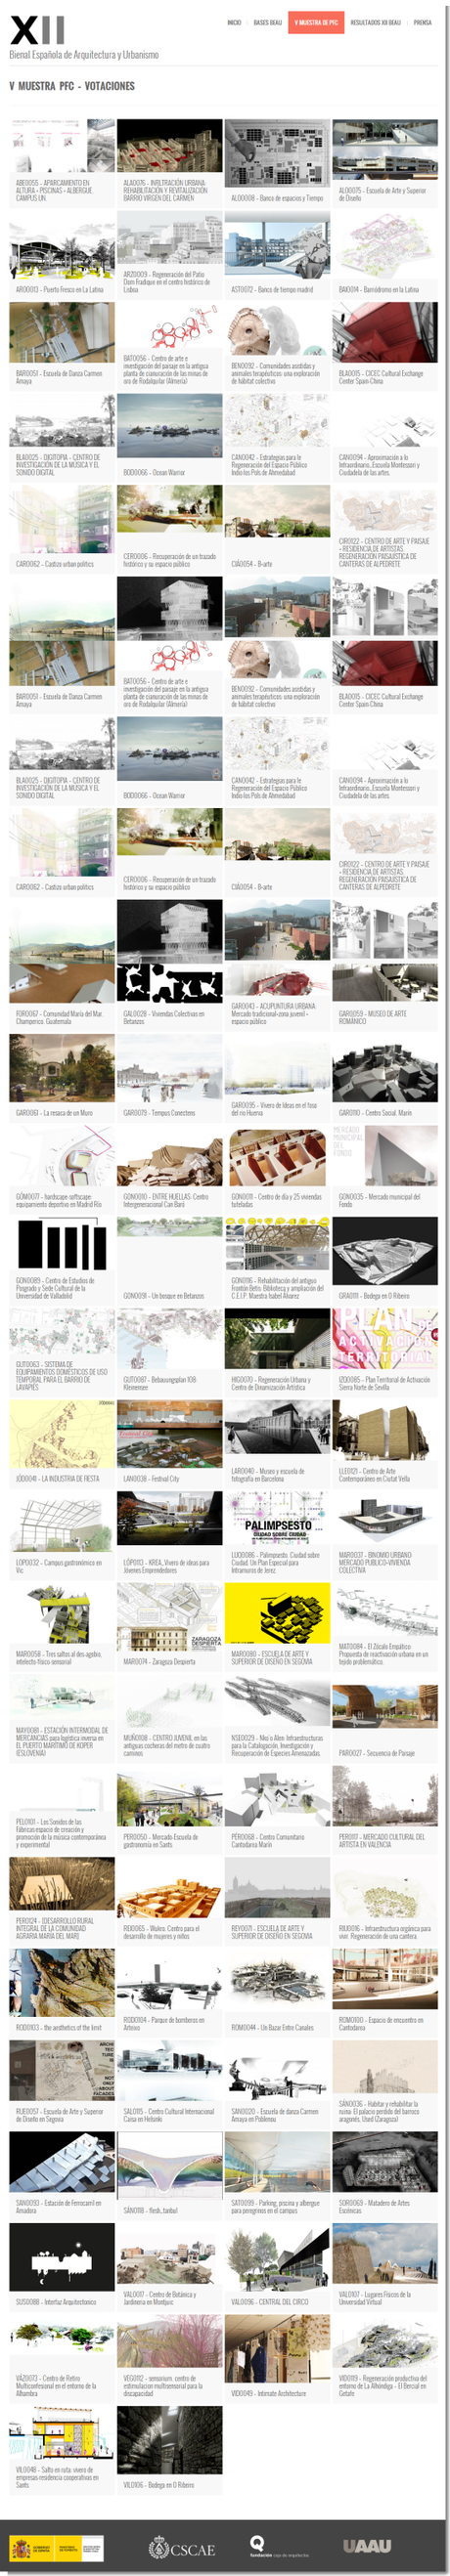 Proyectos Presentados - XII Bienal Española de Arquitectura y Urbanismo